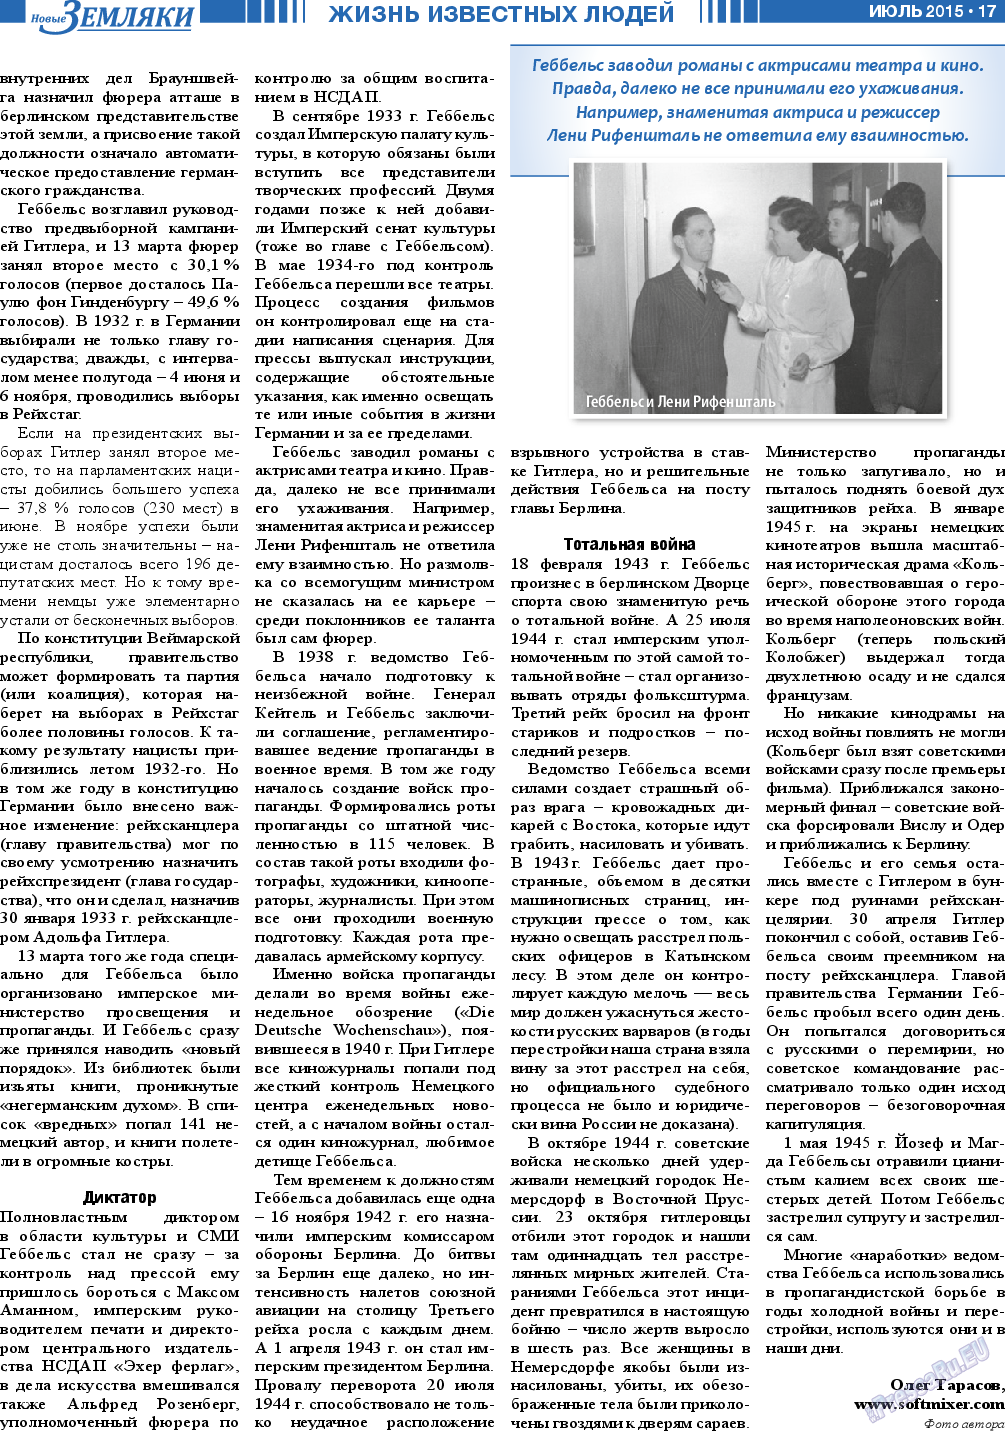 Новые Земляки (газета). 2015 год, номер 7, стр. 17